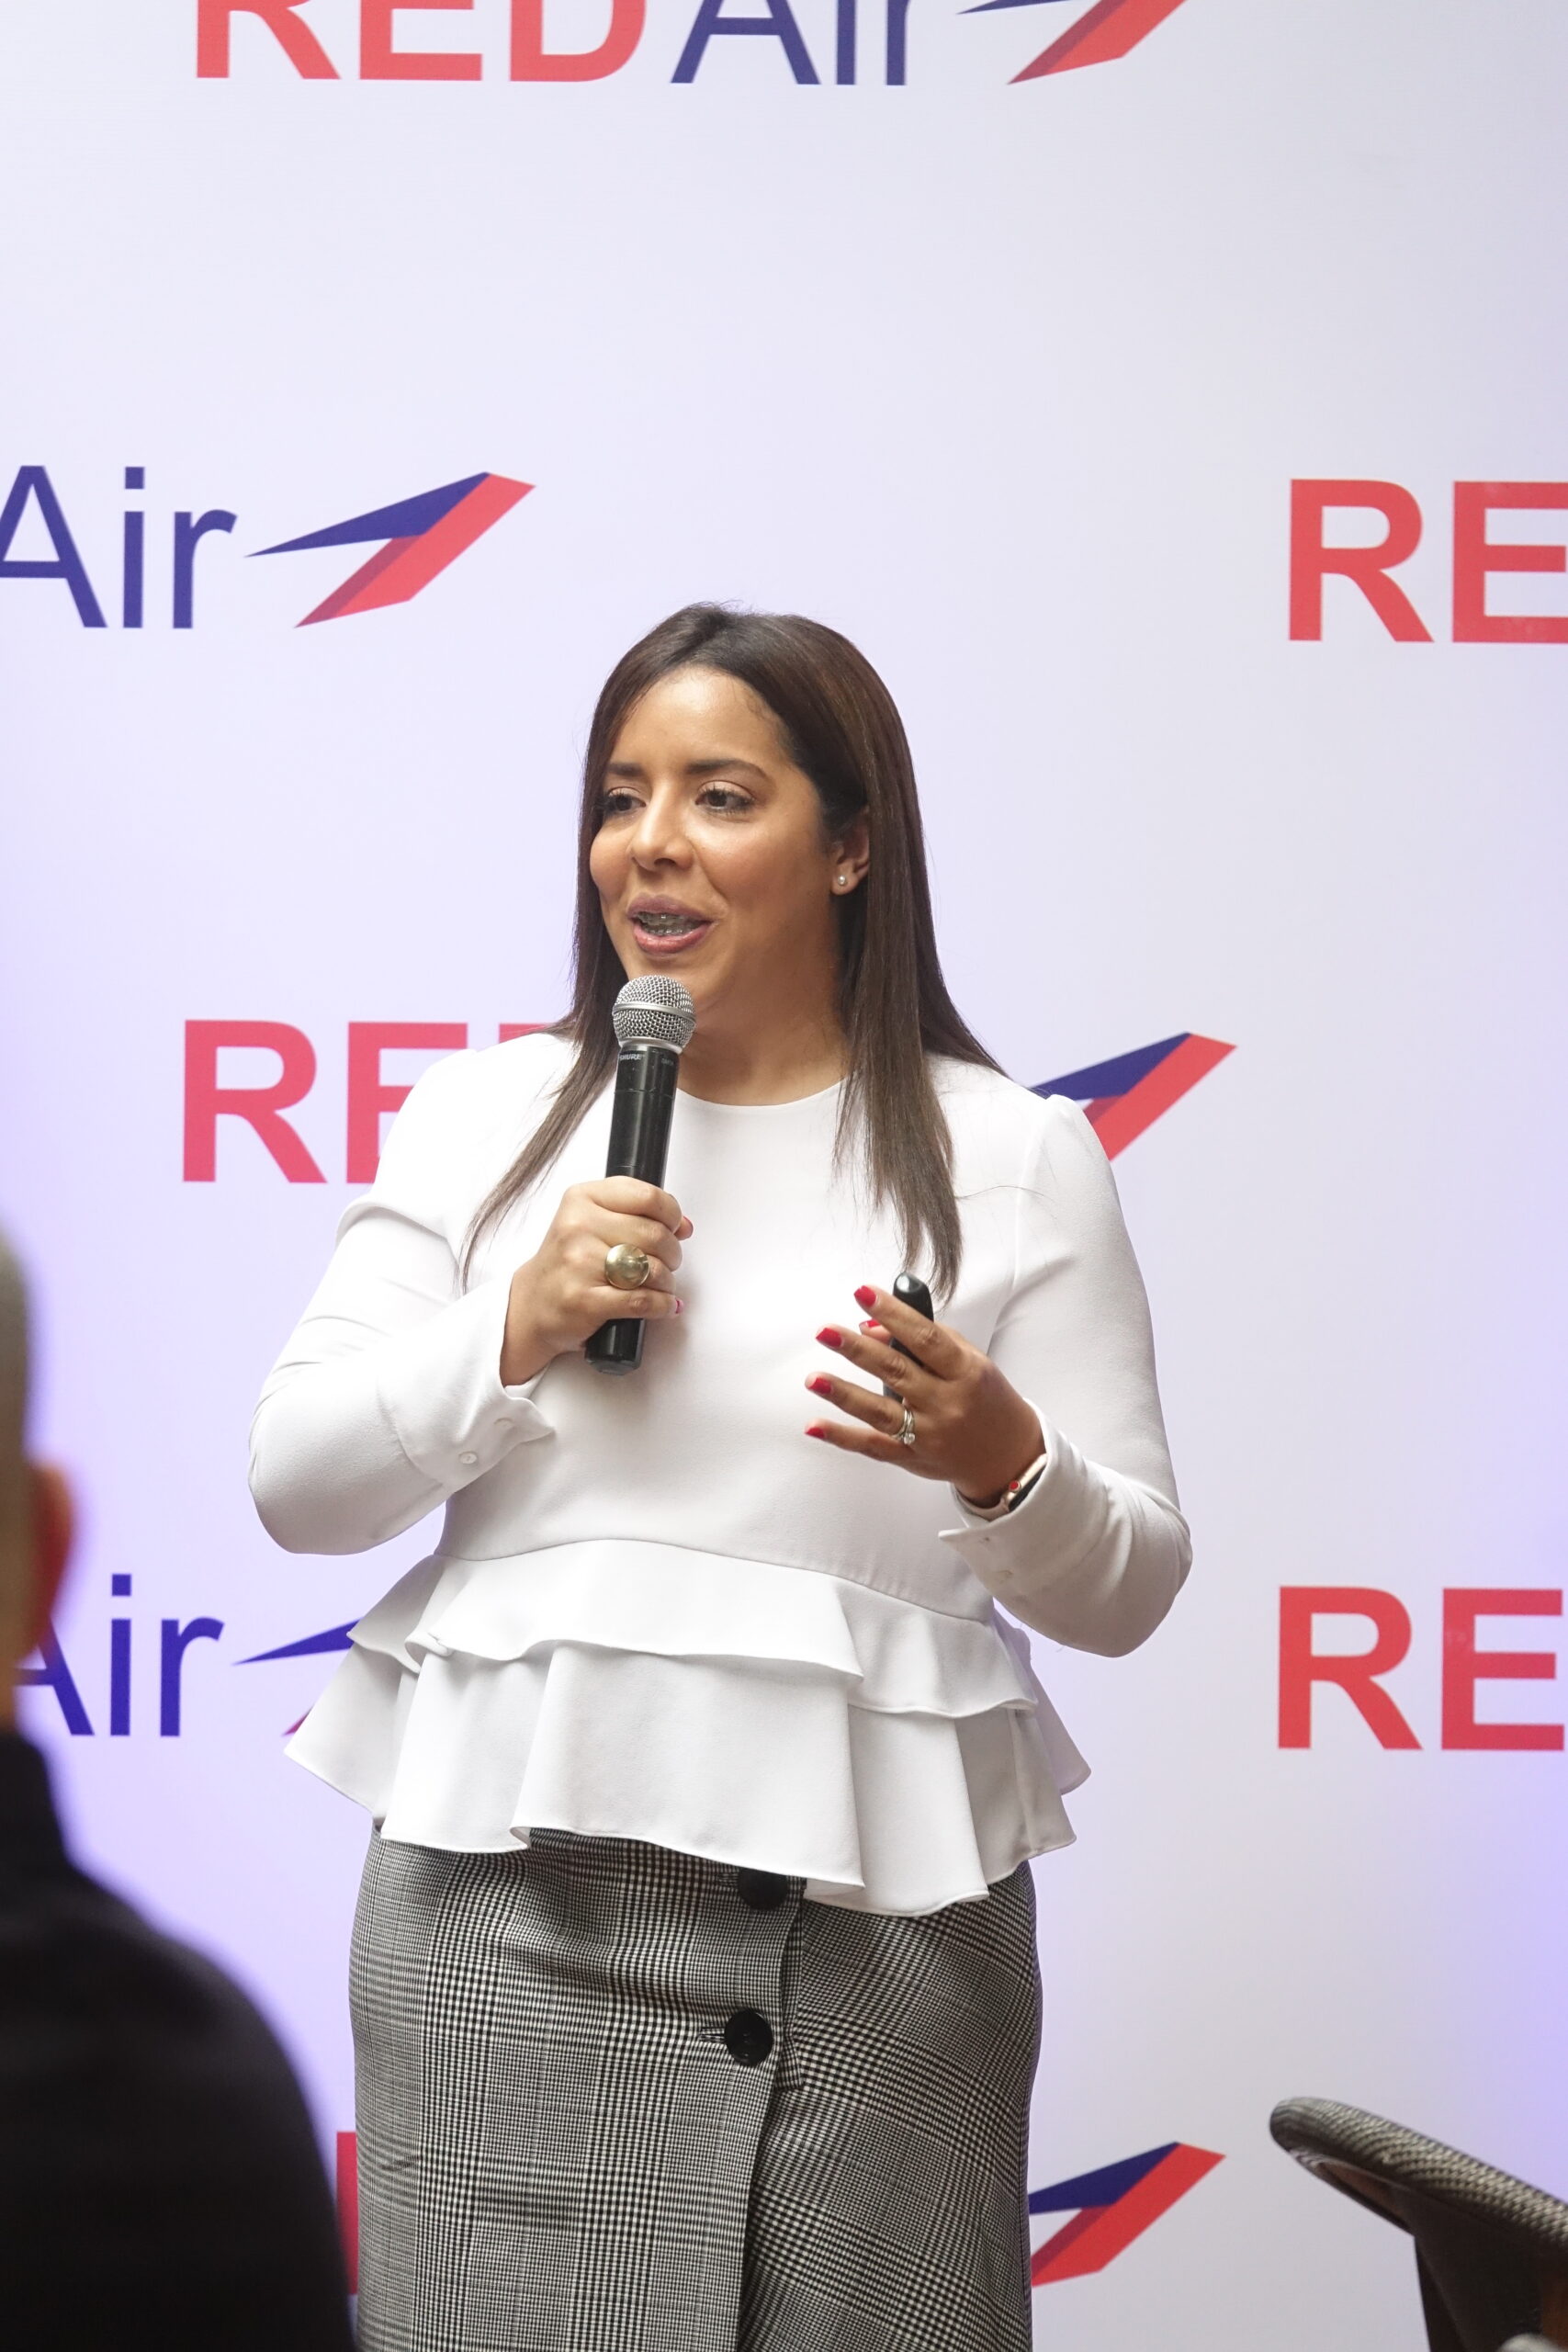 Red Air incrementa sus operaciones entre SD y Miami: ofrecerá tres vuelos  diarios - Noticias de turismo - arecoa.com